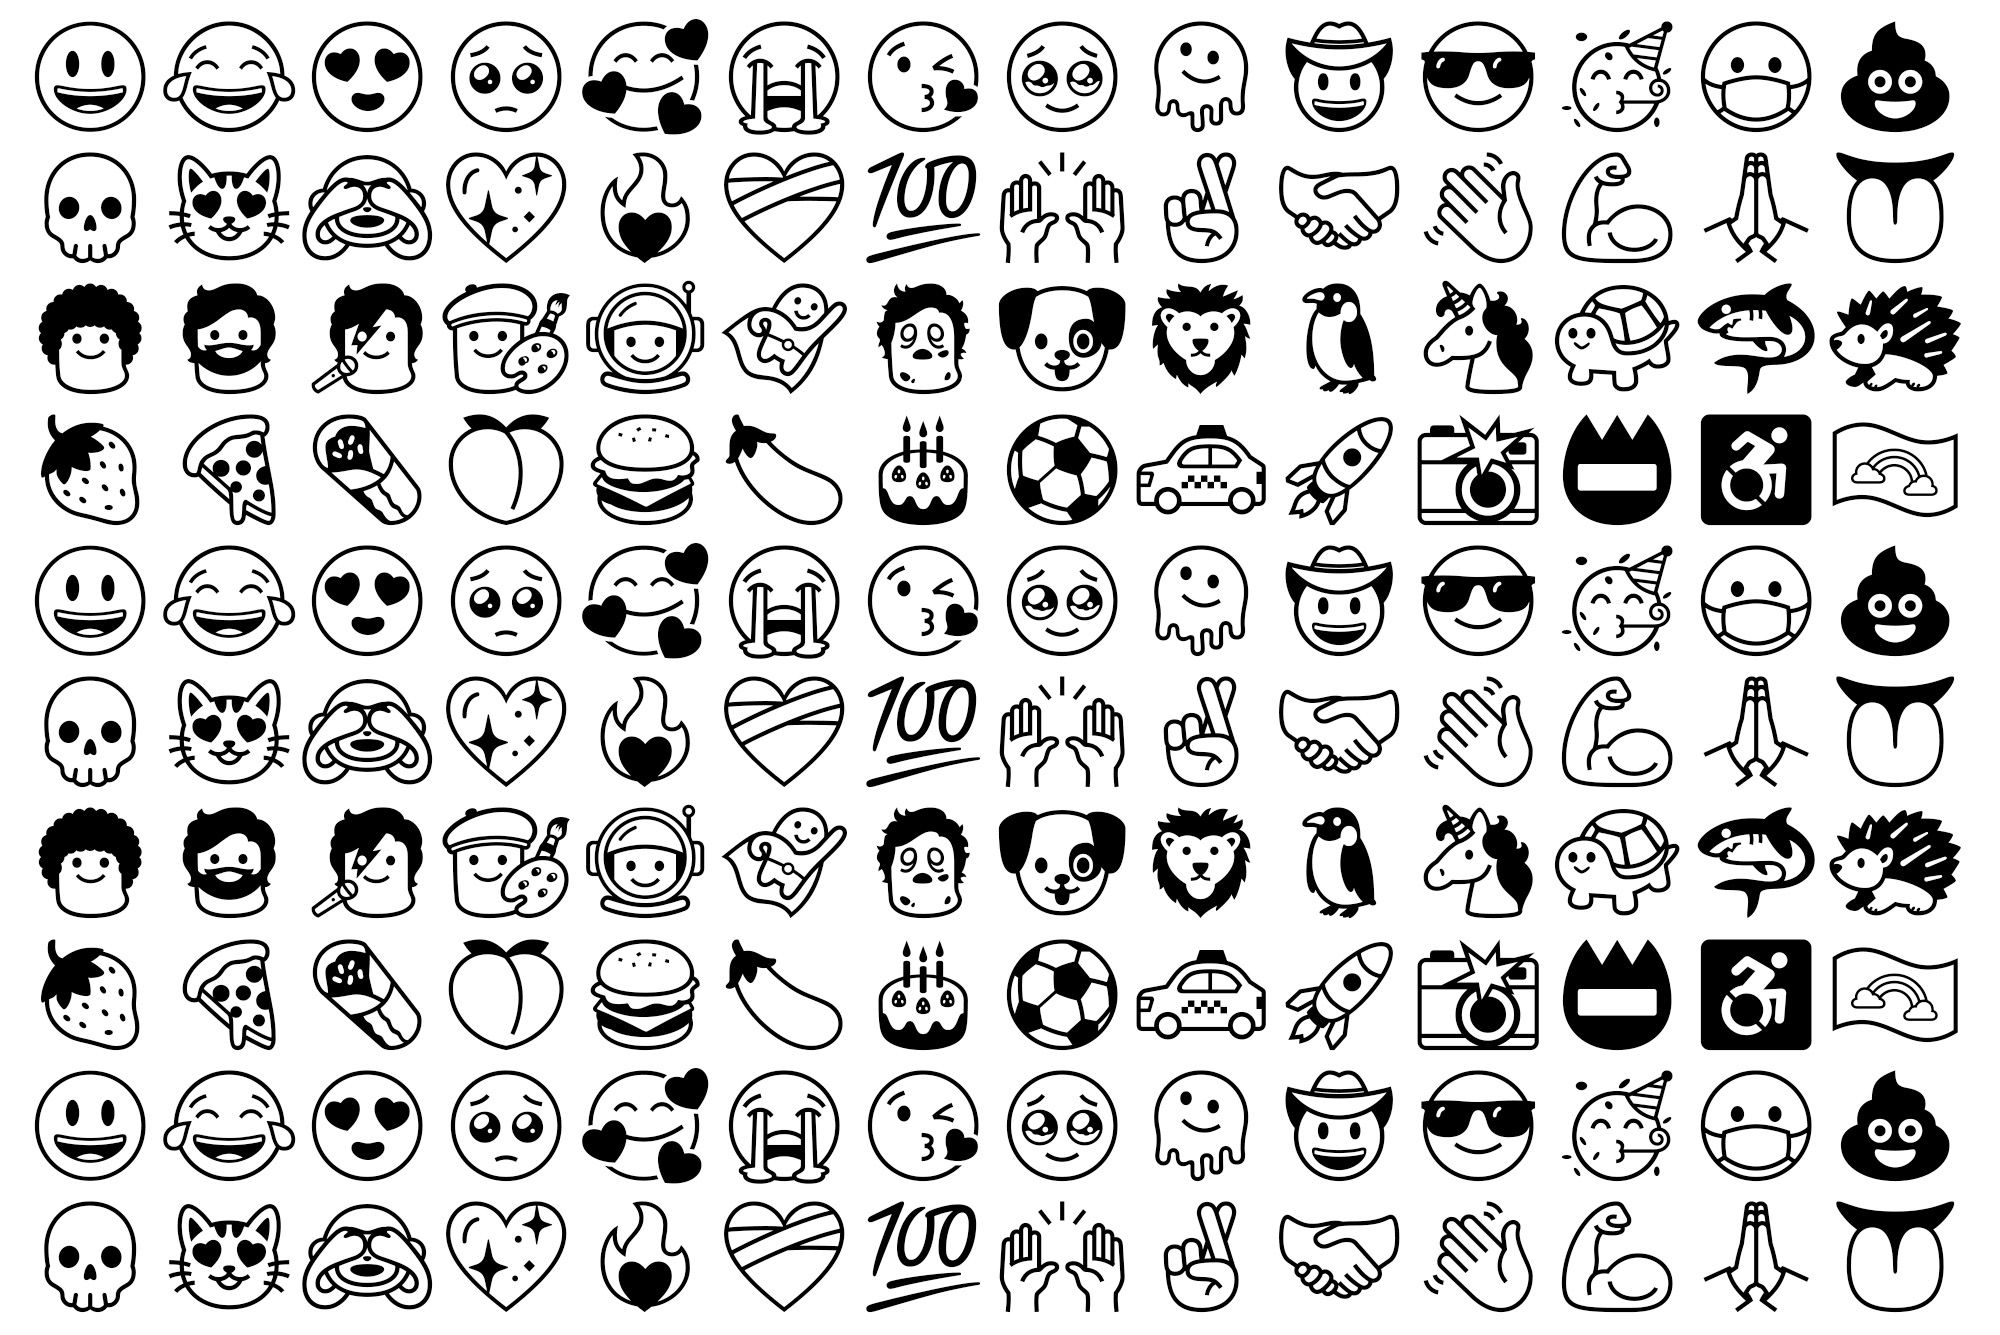 Tổng hợp 200 Font emojis độc đáo